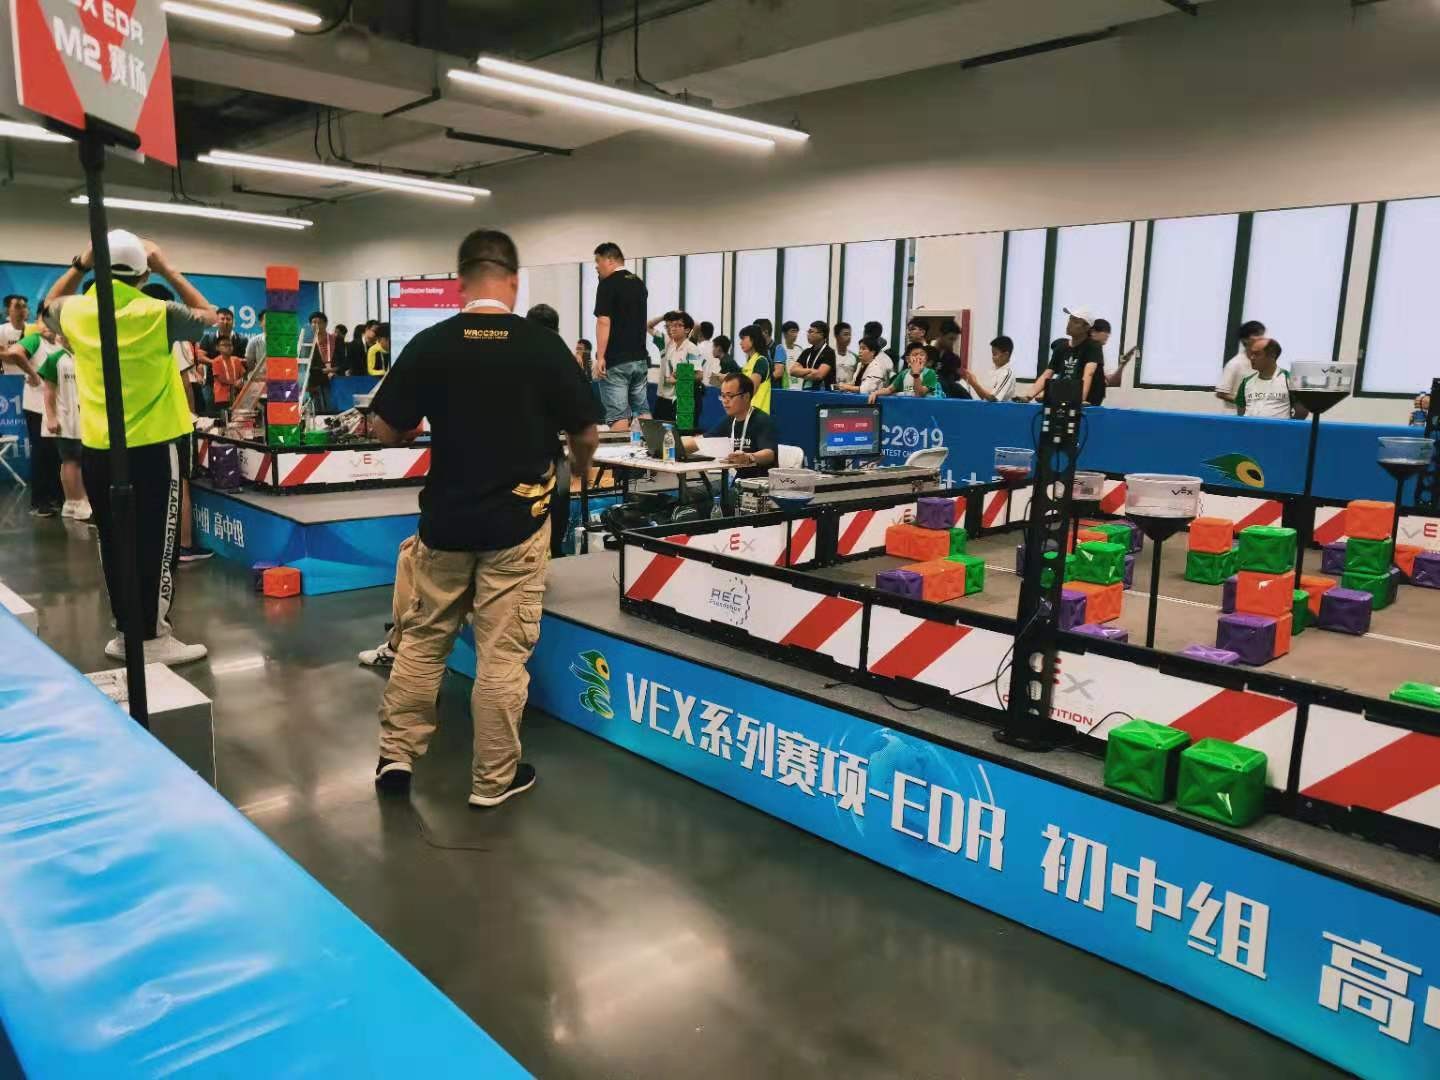 2019北京世界机器人大赛冠军挑战赛